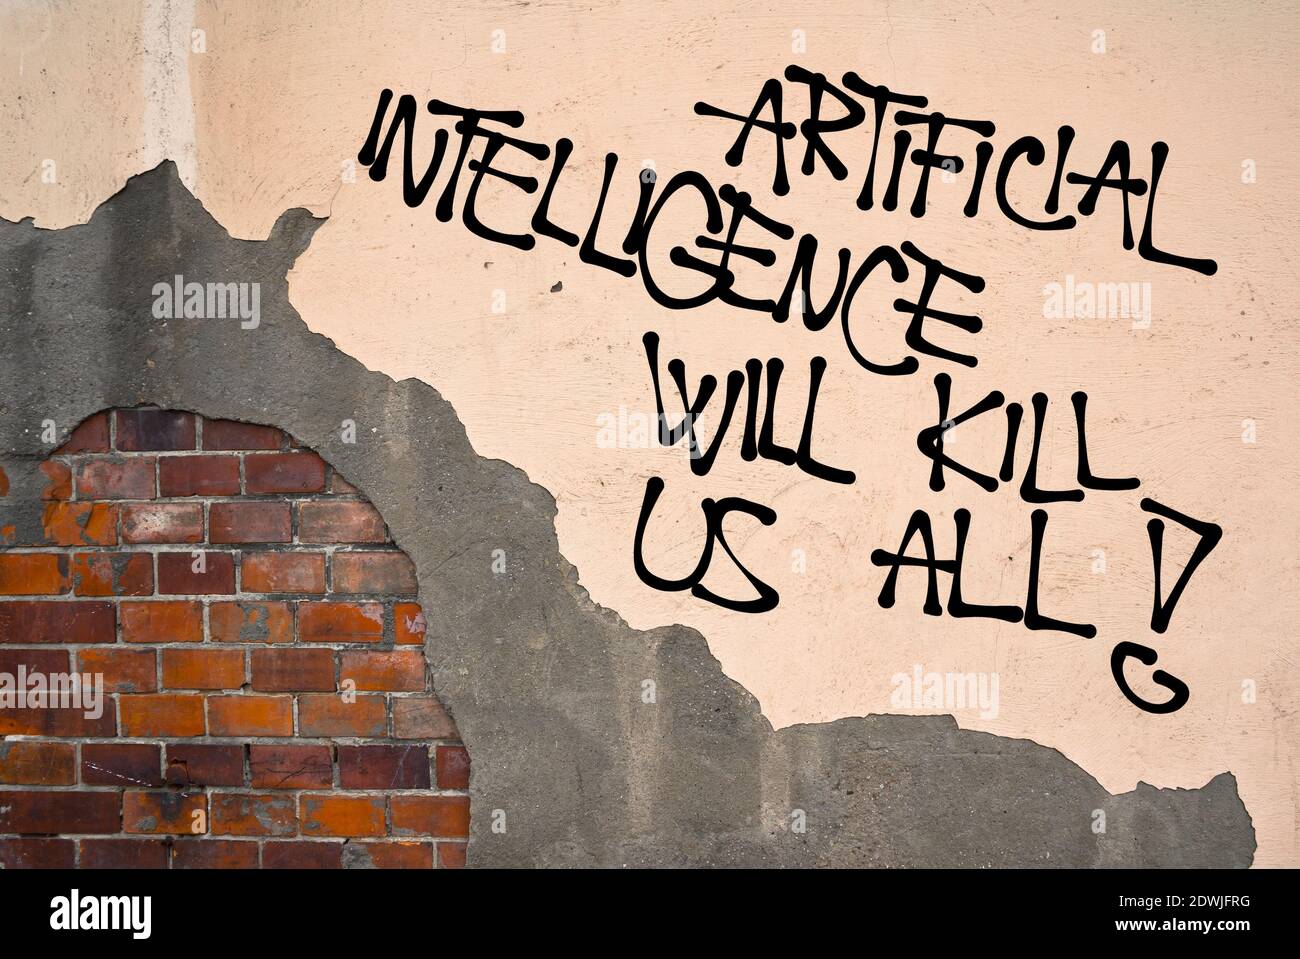 Künstliche Intelligenz will Kill US All - - handschriftliche Graffiti an die Wand gesprüht, anarchistische Ästhetik - Gefahr der Automatisierung und Aufstand der Rob Stockfoto